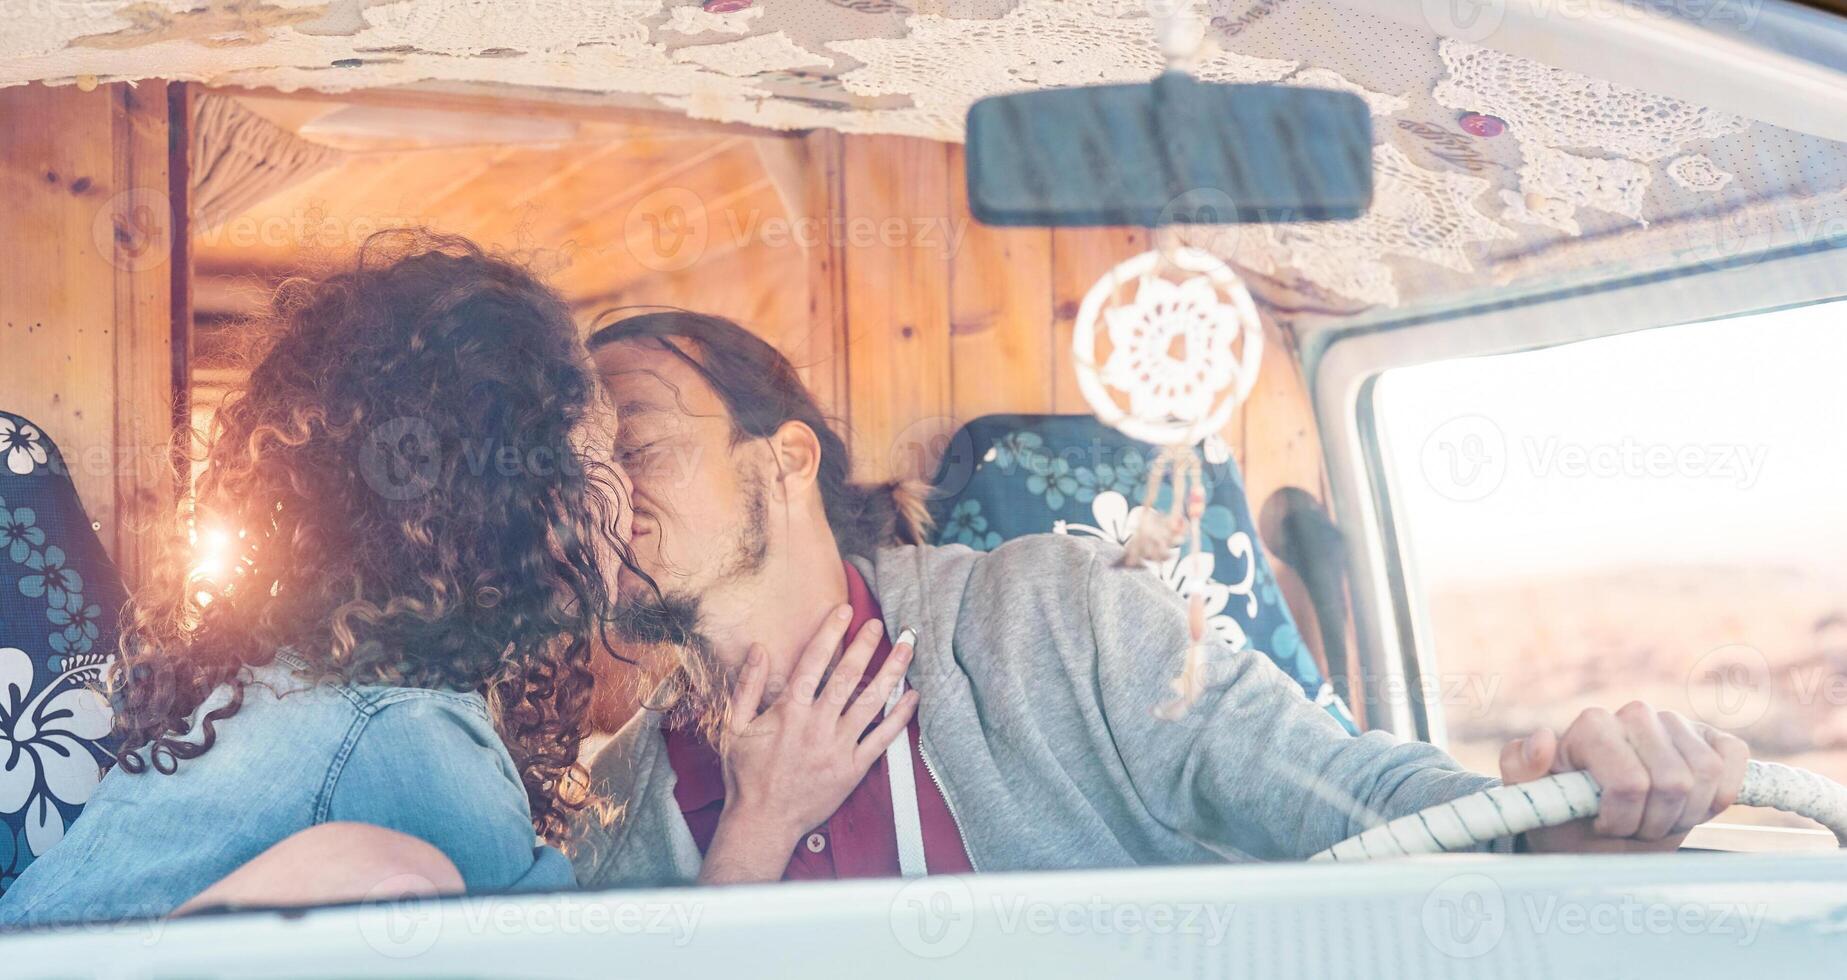 glücklich Paar küssen Innerhalb ein Jahrgang Mini van - - romantisch Liebhaber haben ein zärtlich Moment während ein Ausflug - - Menschen Beziehung, Urlaub, Reise und Transport Konzept foto